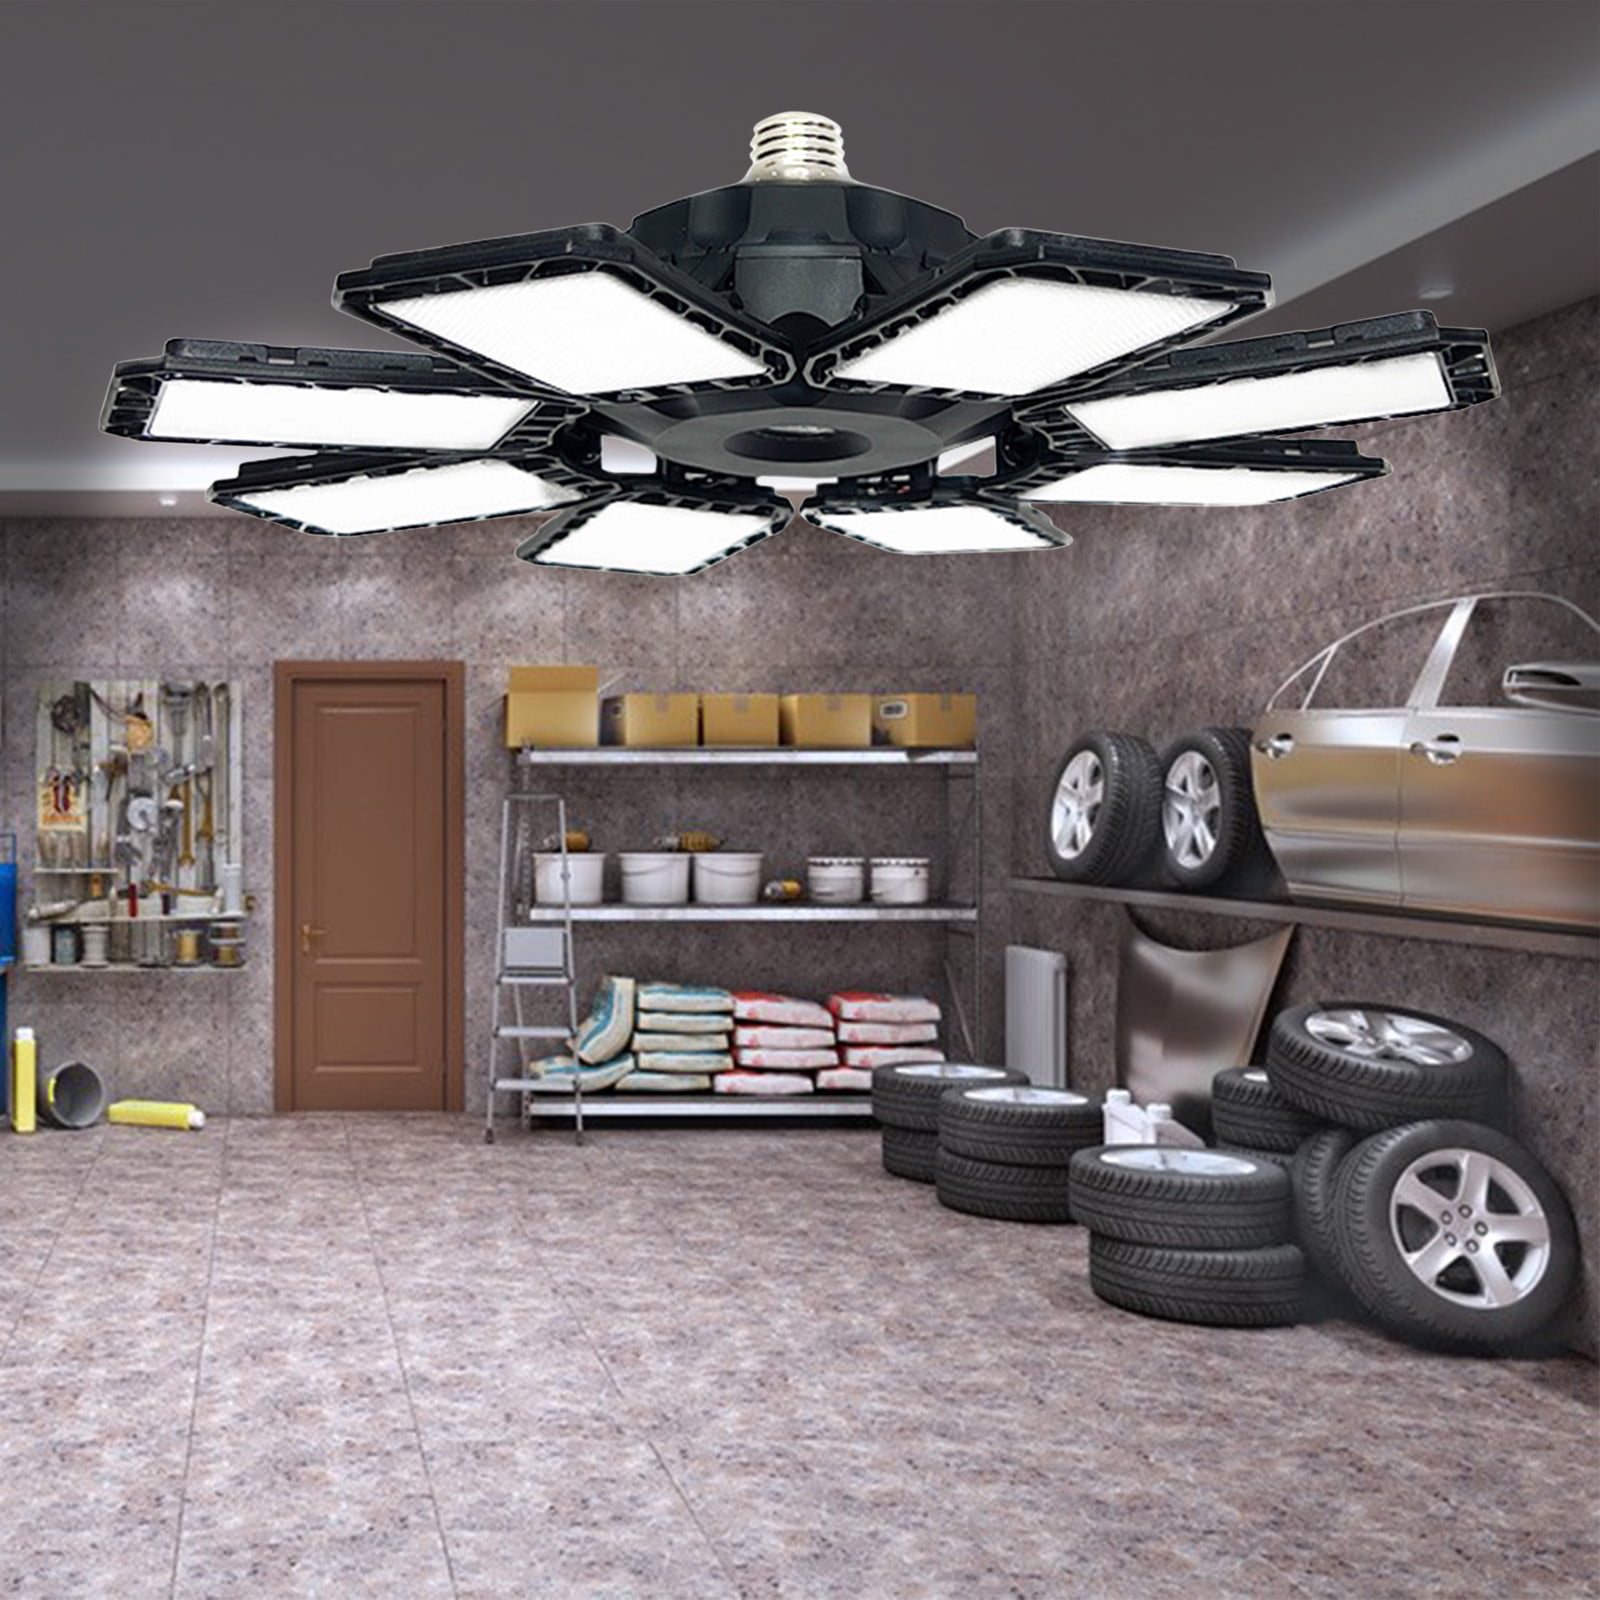 LED Garage Lights, Deformable LED Garage Ceiling Lights With Adjustables  Panels, LED Shop Lights For Garage Workshop Basement Support E26/E27 Screw  Socket